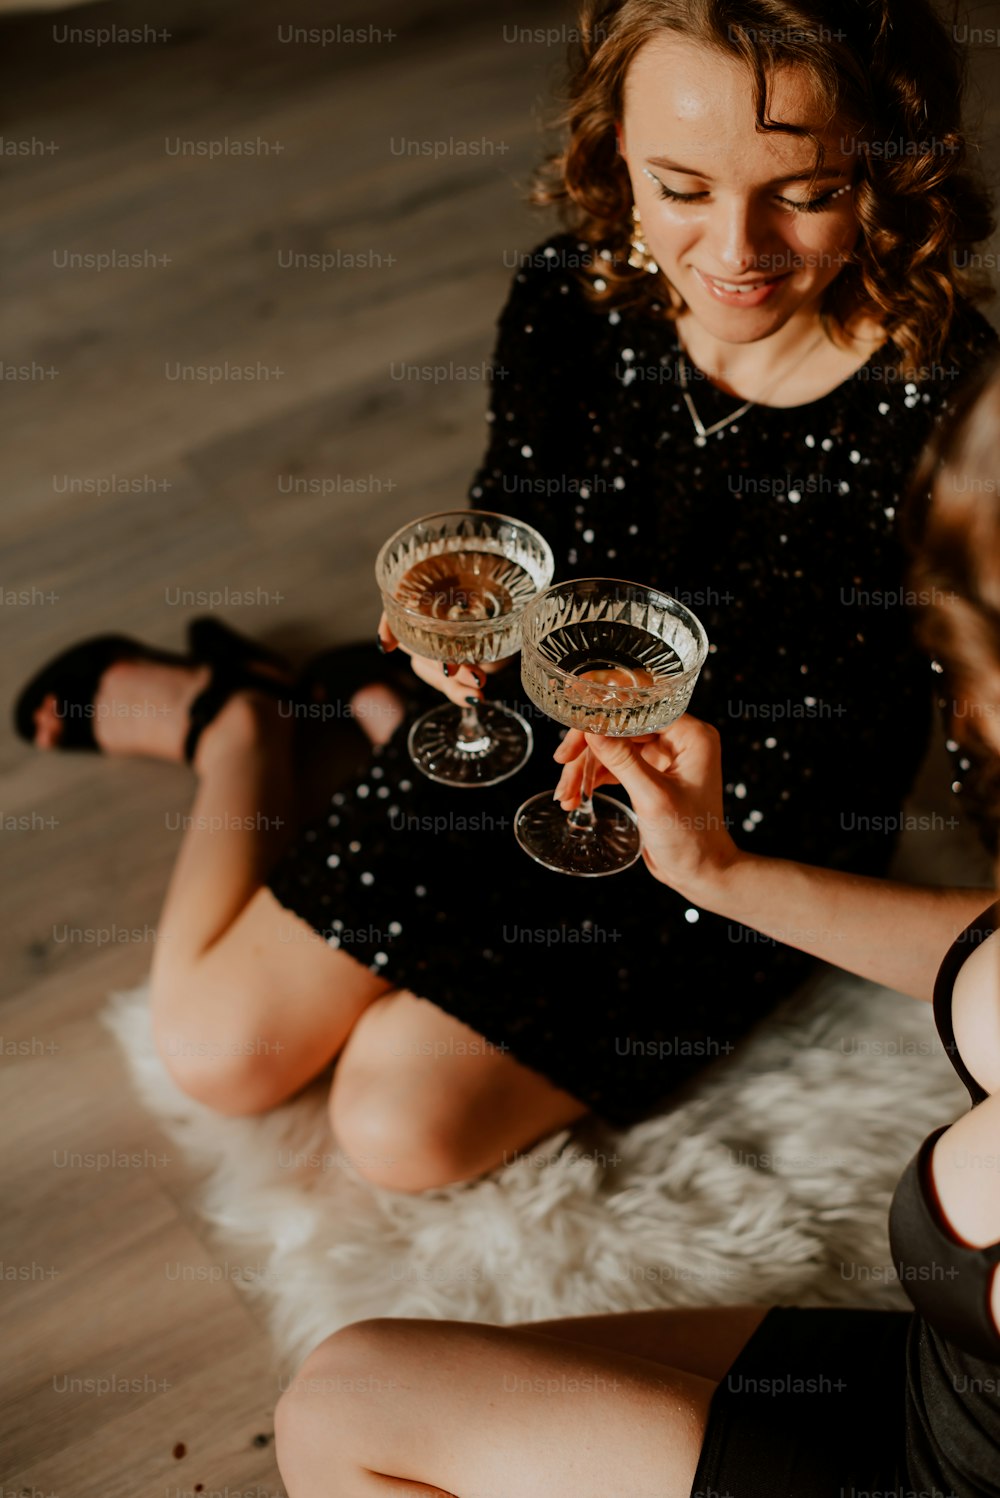 2つのワイングラスを持って床に座っている女性